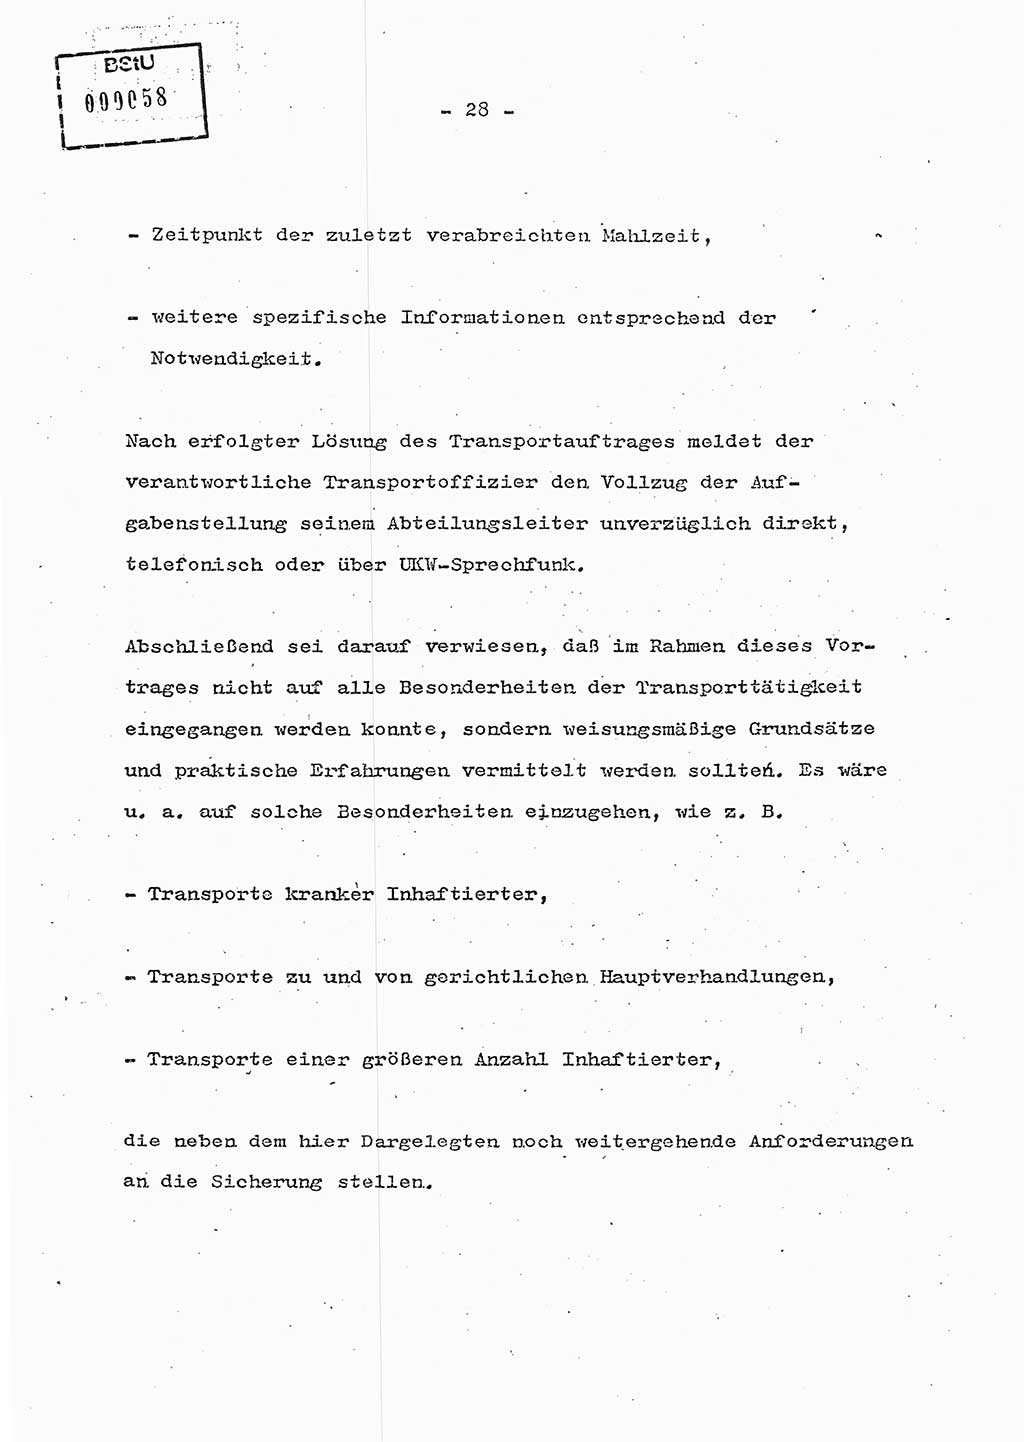 Schulungsmaterial Exemplar-Nr.: 7, Ministerium für Staatssicherheit [Deutsche Demokratische Republik (DDR)], Abteilung (Abt.) ⅩⅣ, Berlin 1986, Seite 28 (Sch.-Mat. Expl. 7 MfS DDR Abt. ⅩⅣ /86 1986, S. 28)